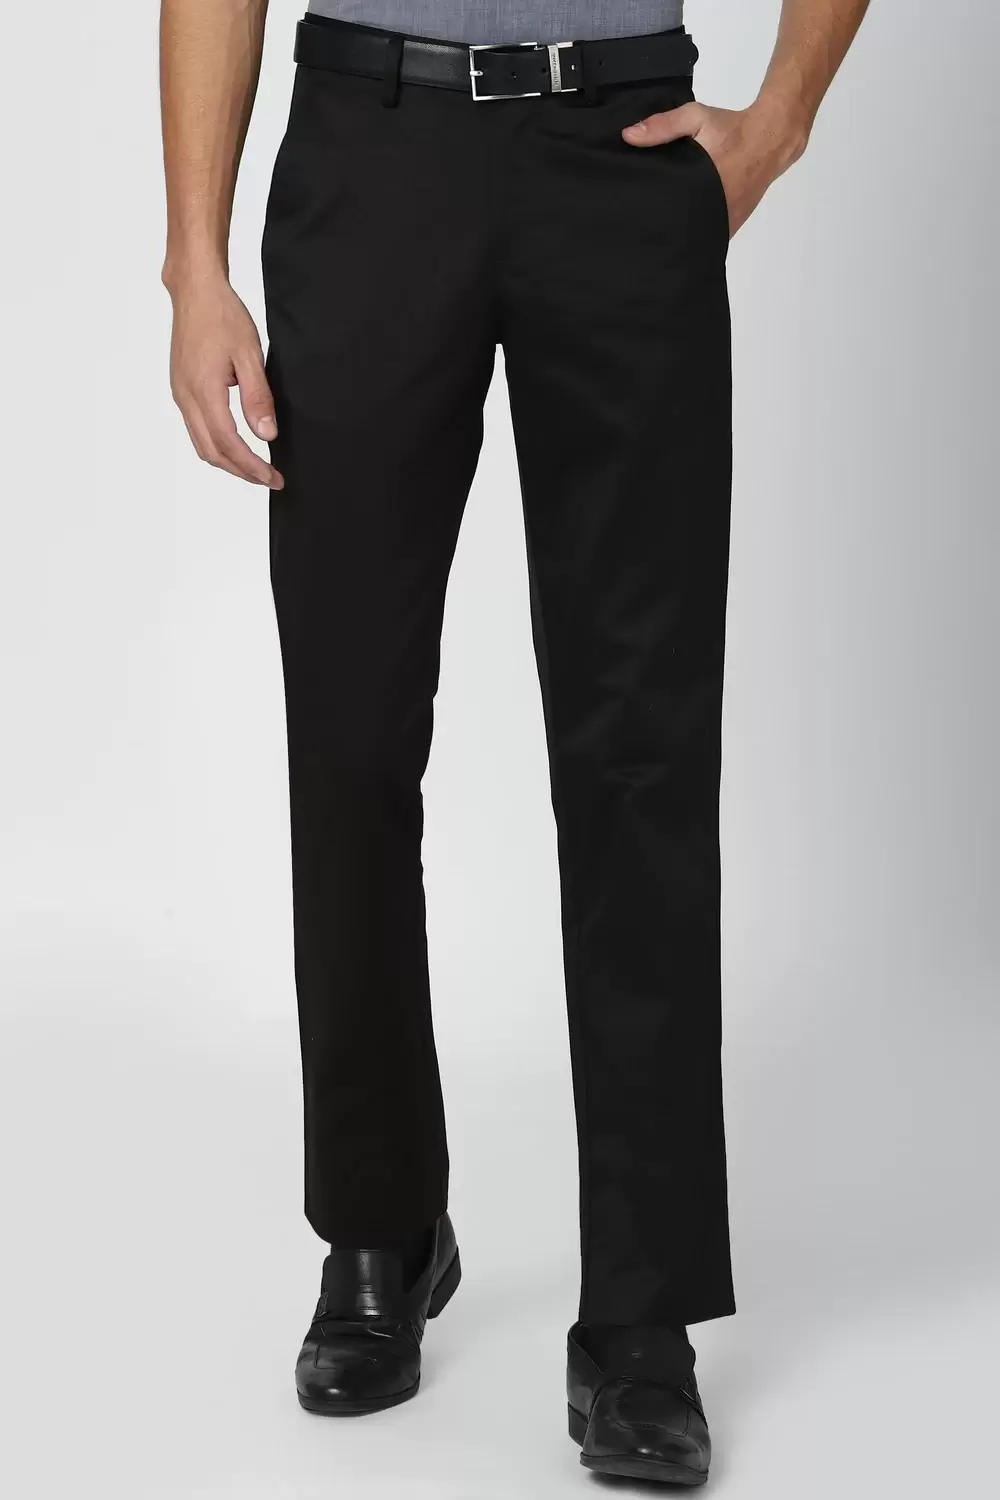 Peter England Men Black Solid Slim Fit Formal Trouser